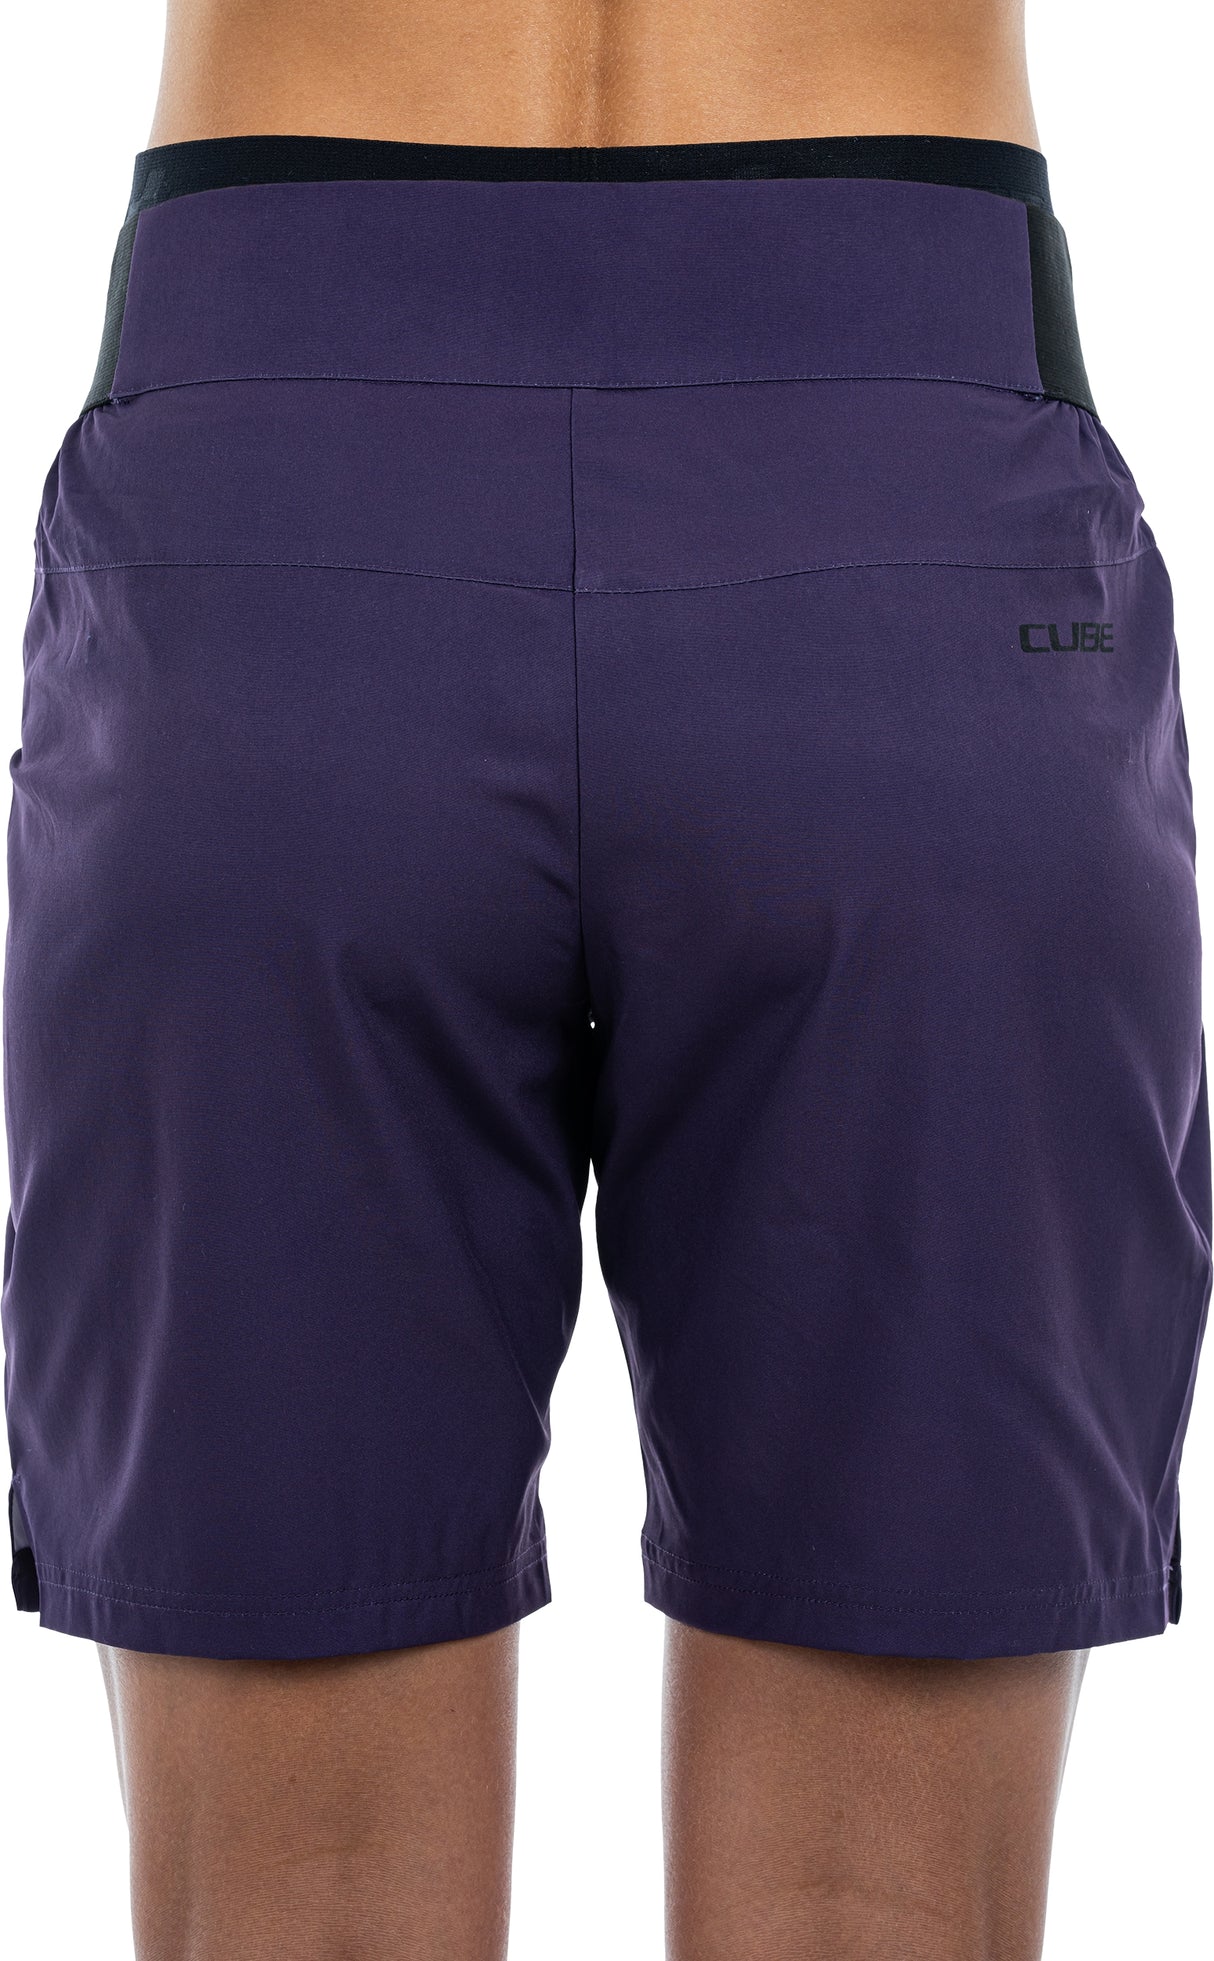 CUBE ATX WS Baggy Shorts CMPT avec short intérieur violet